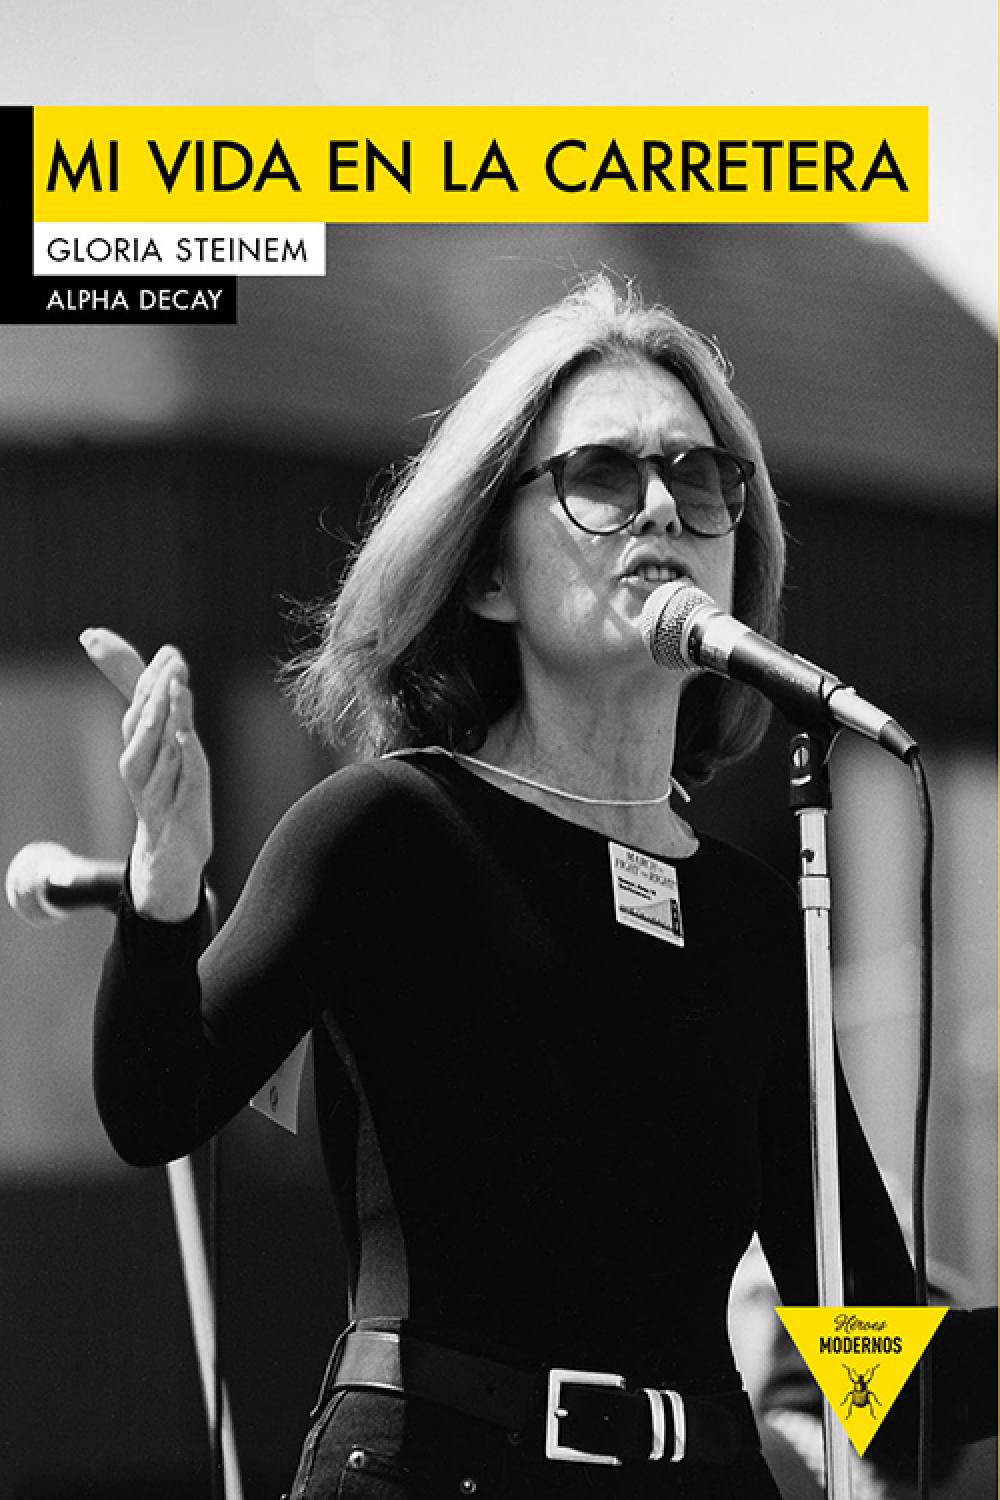 Gloria Steinem biografía